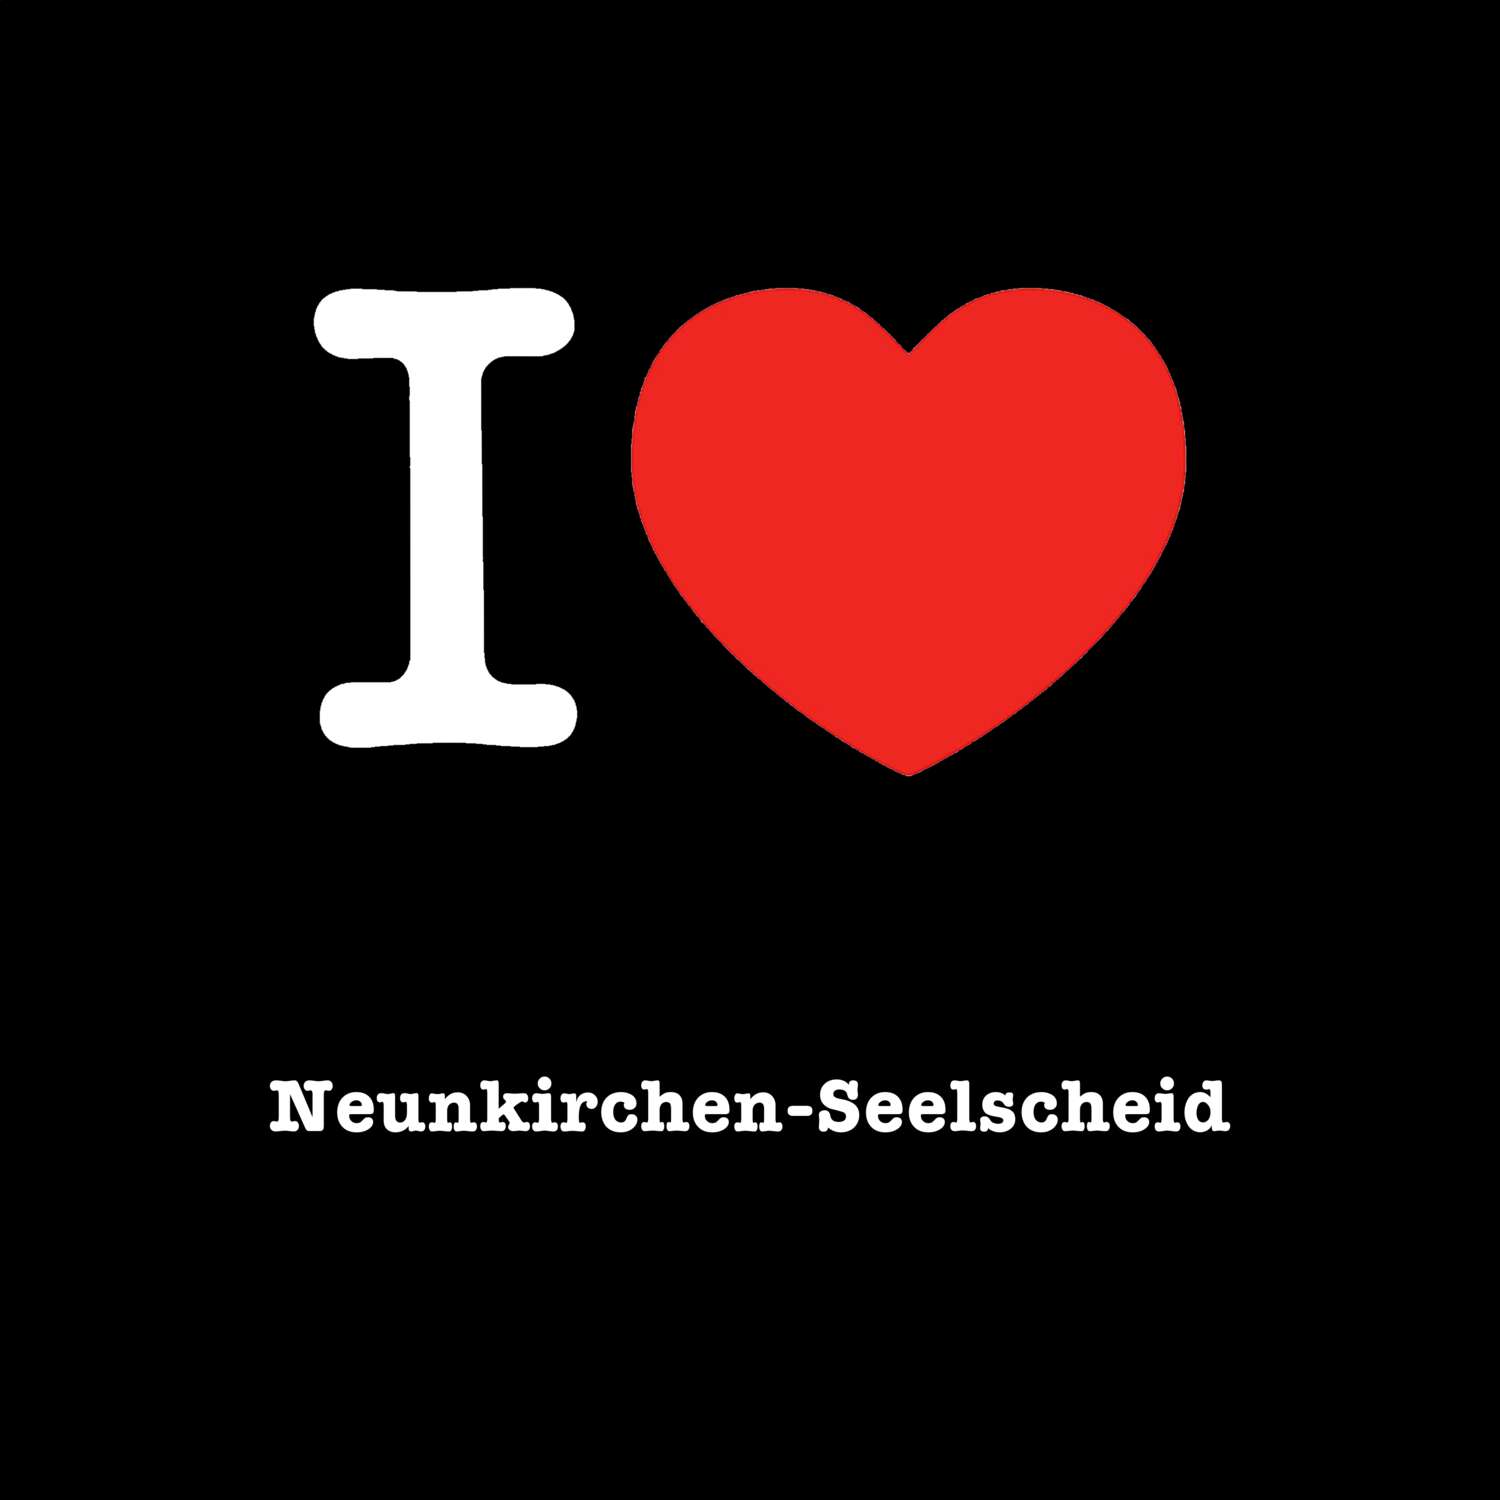 Neunkirchen-Seelscheid T-Shirt »I love«